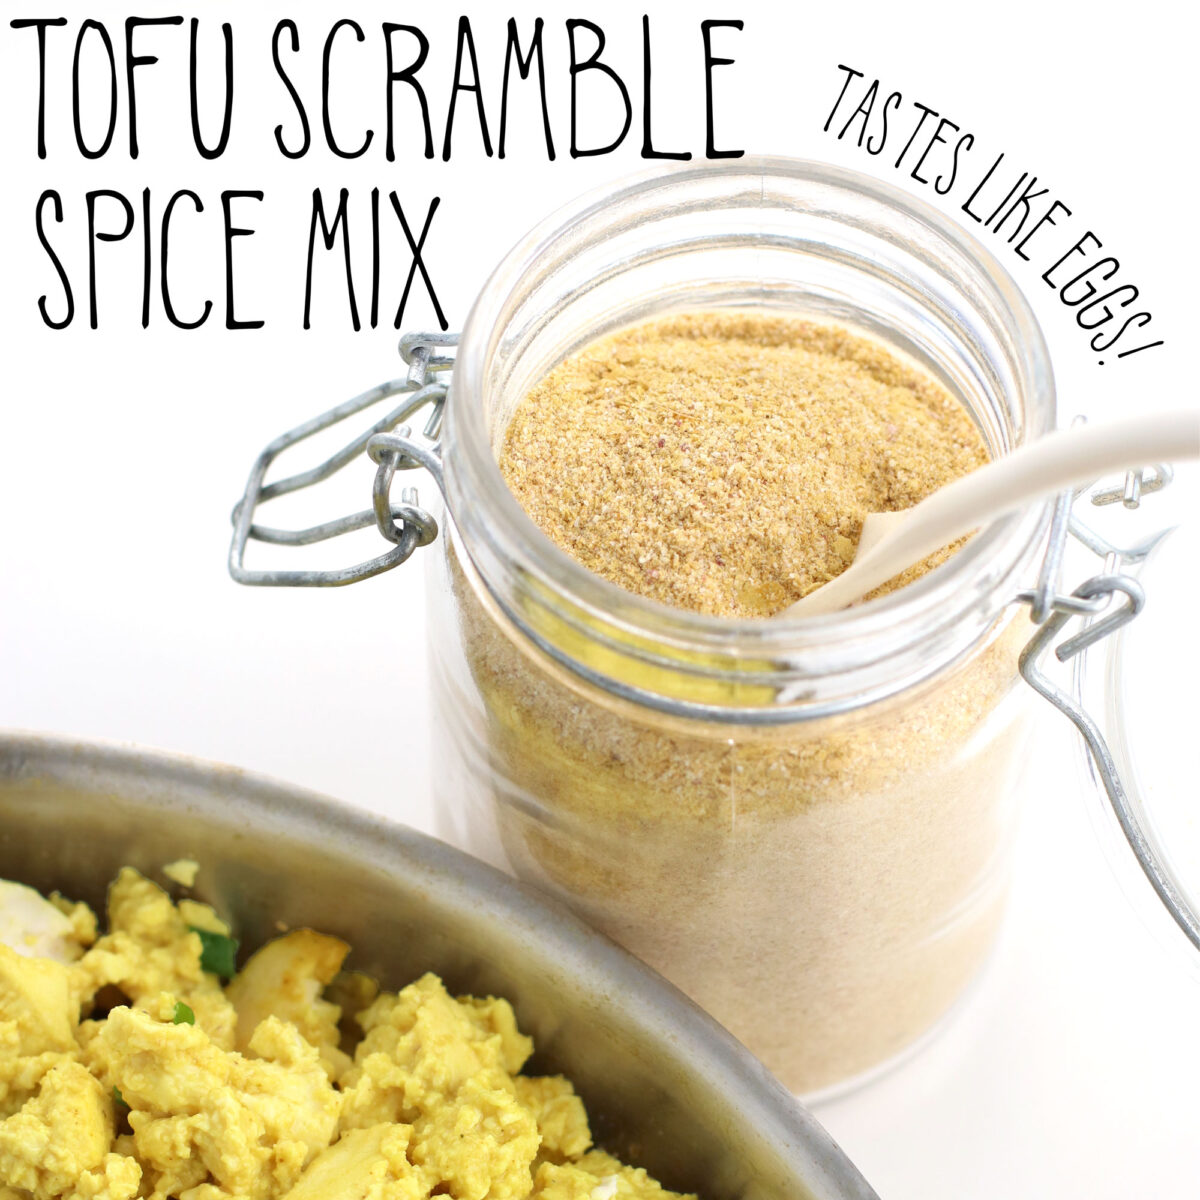 tofu scramble spice mix recipe